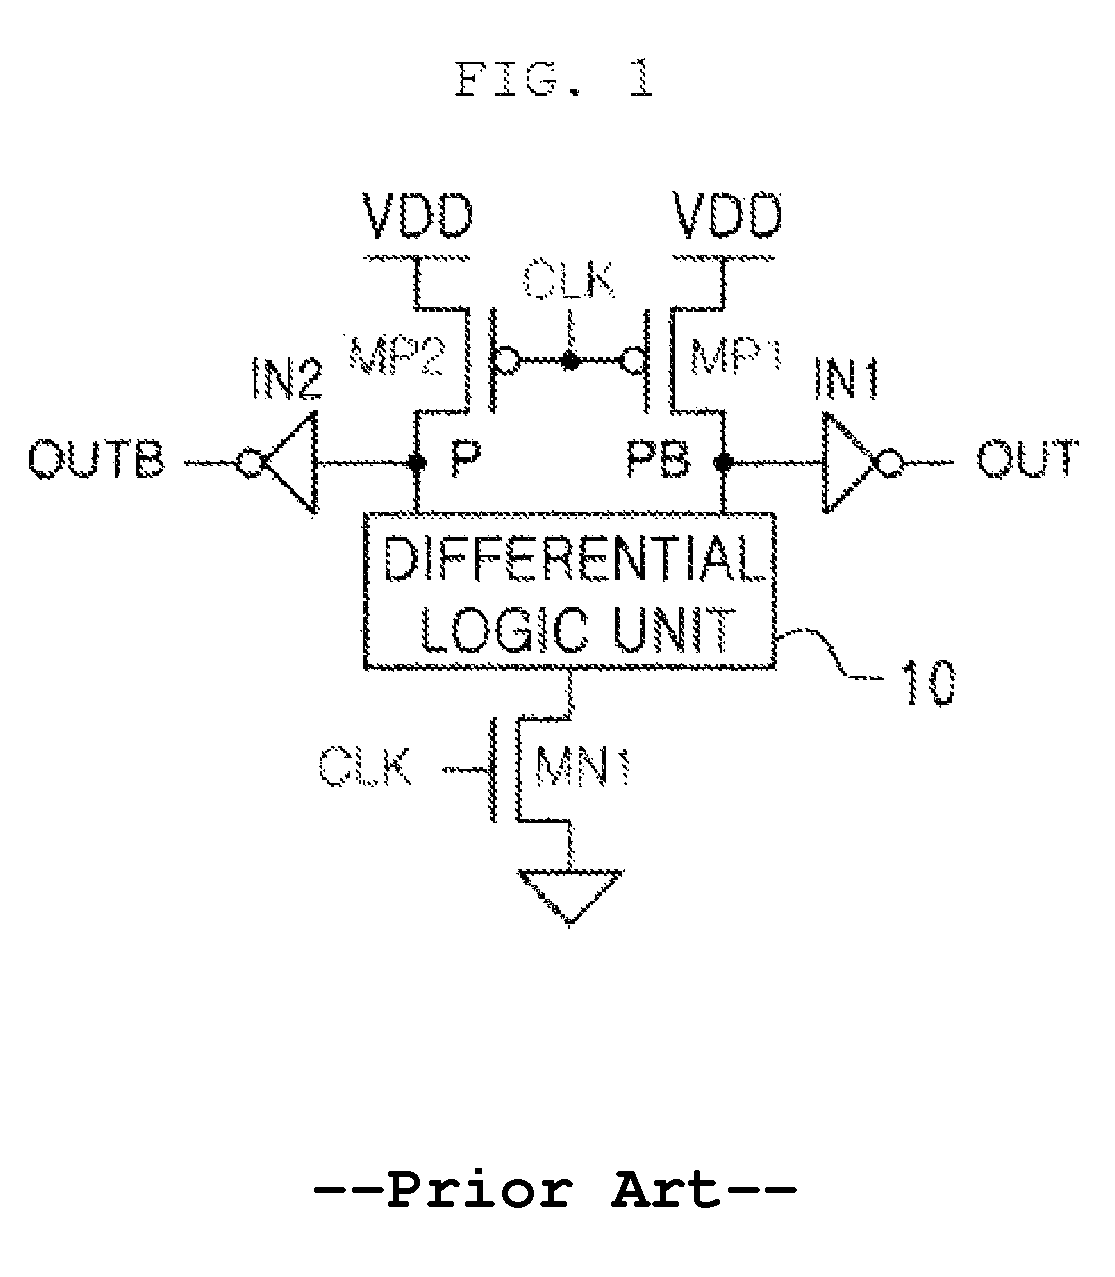 CMOS differential logic circuit using voltage boosting technique